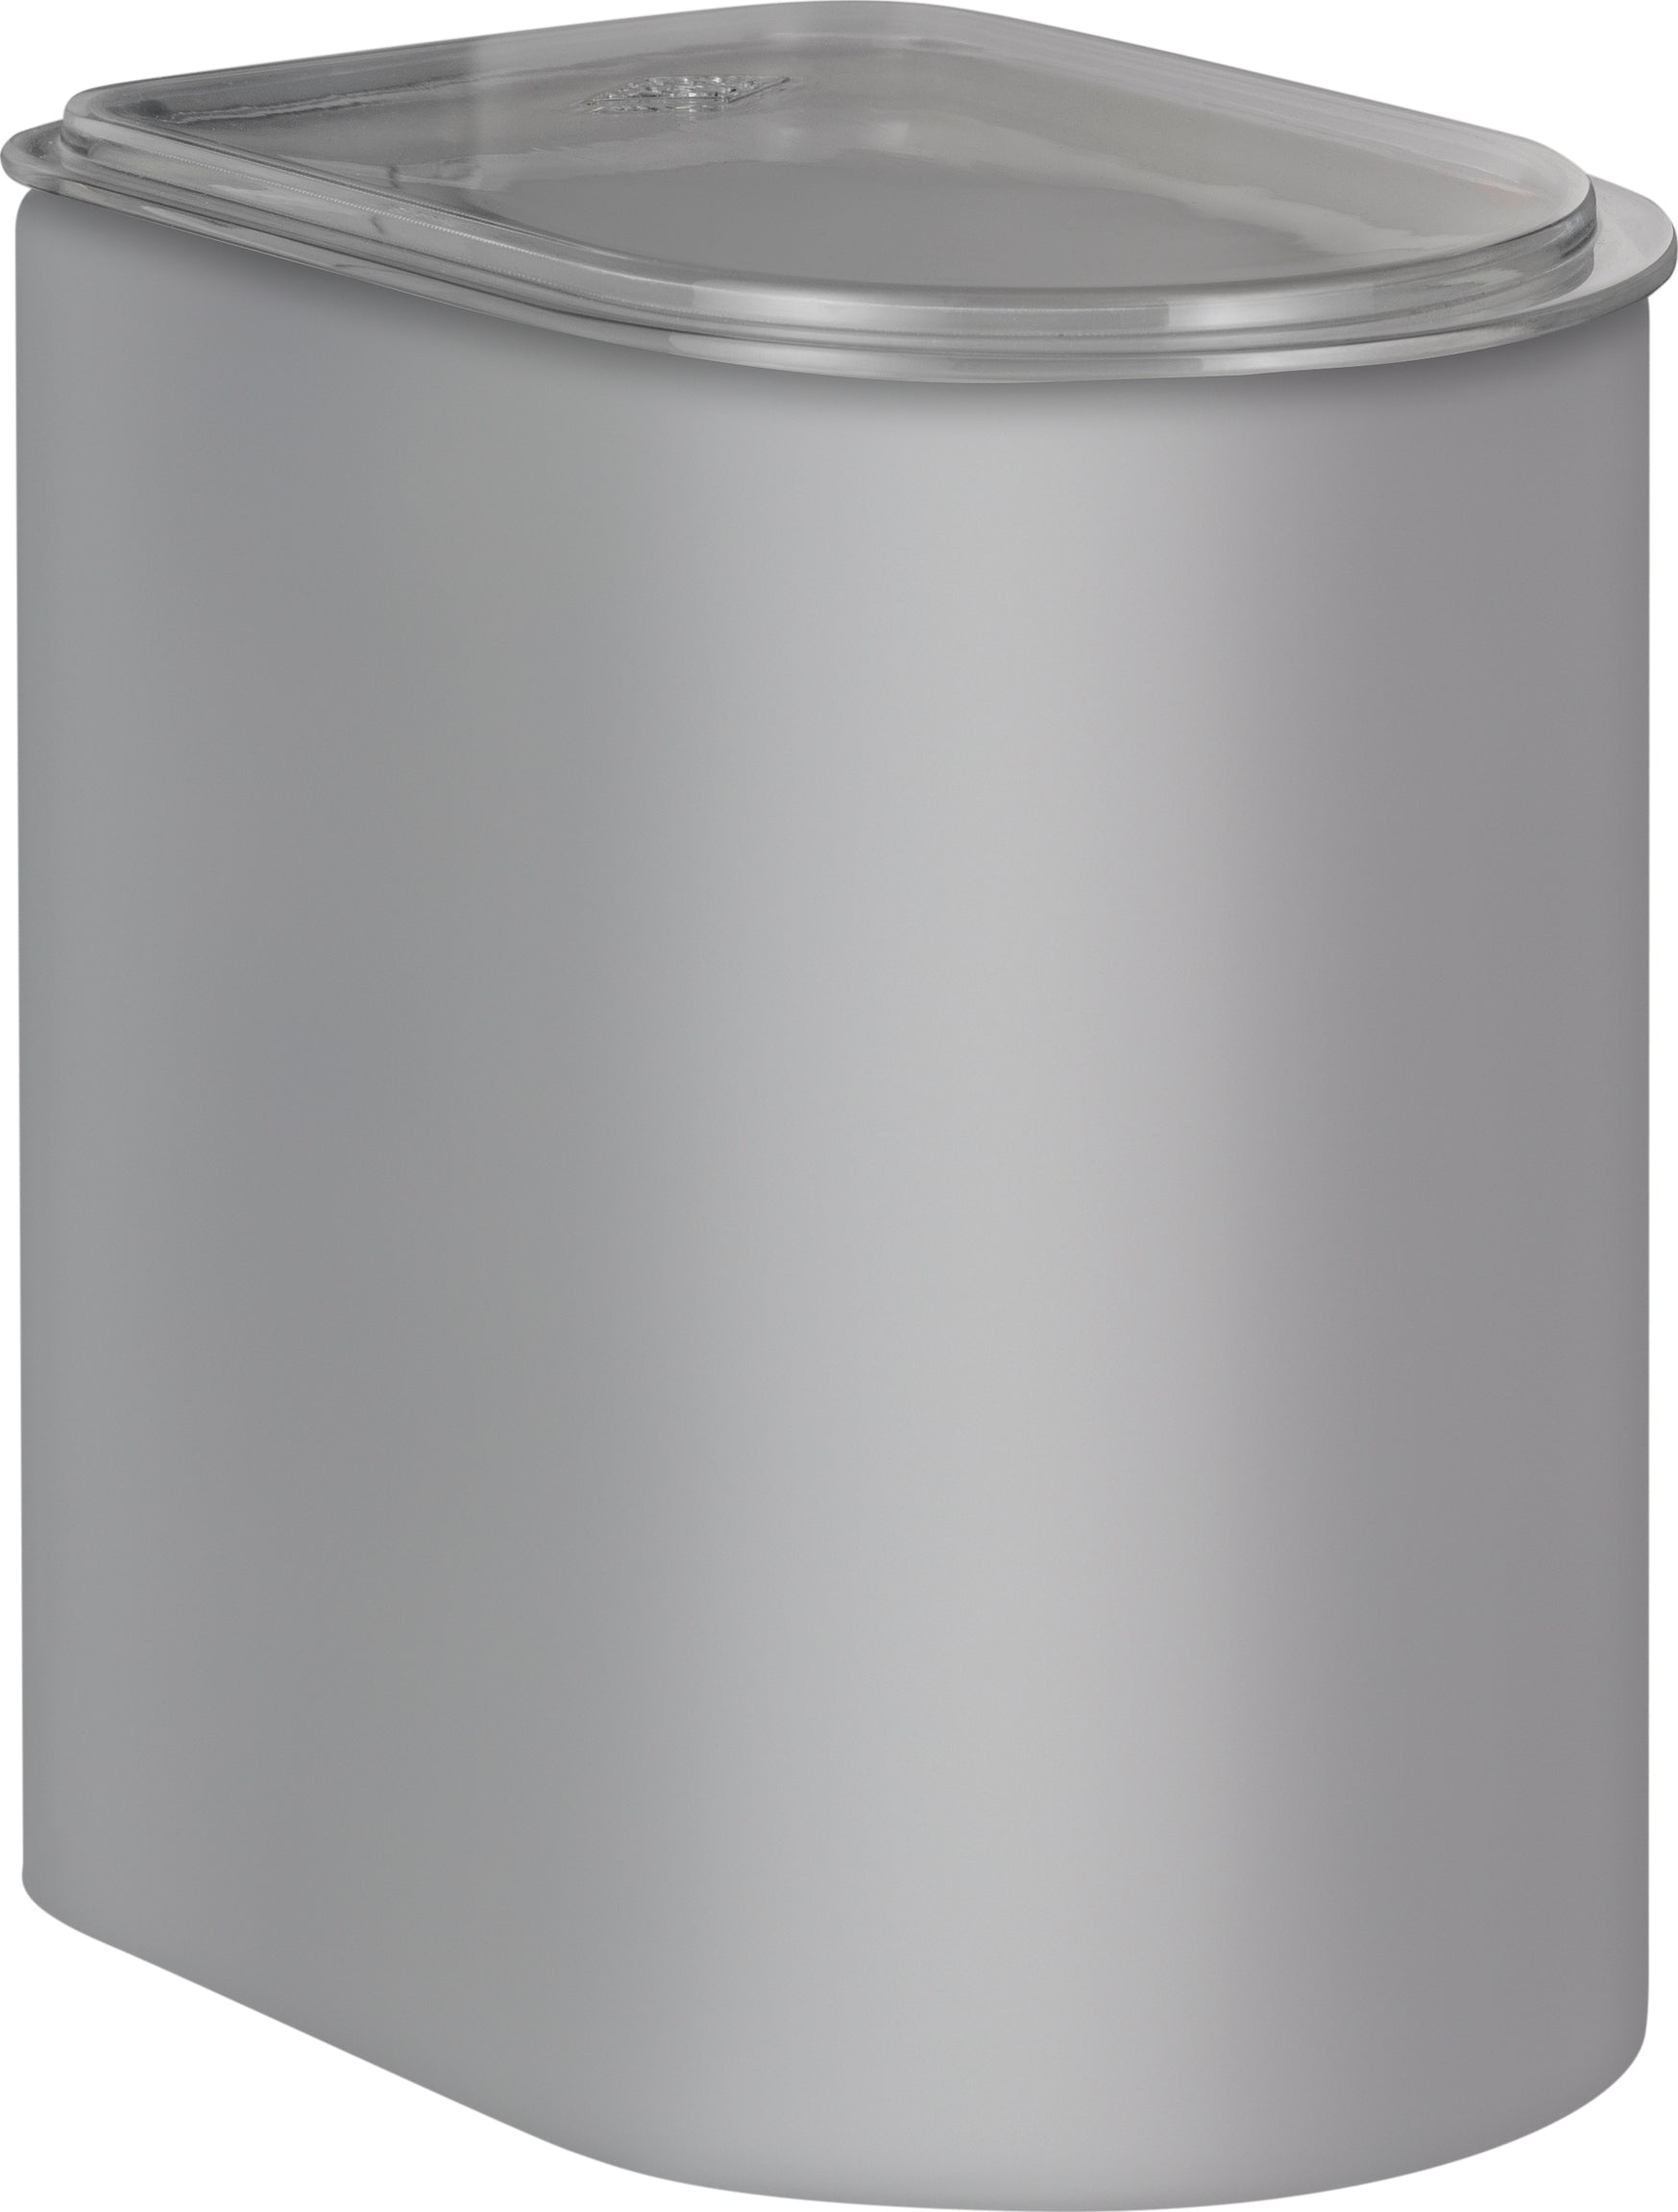 Wesco Lagringslåda 2.2 liter, sval grå matta